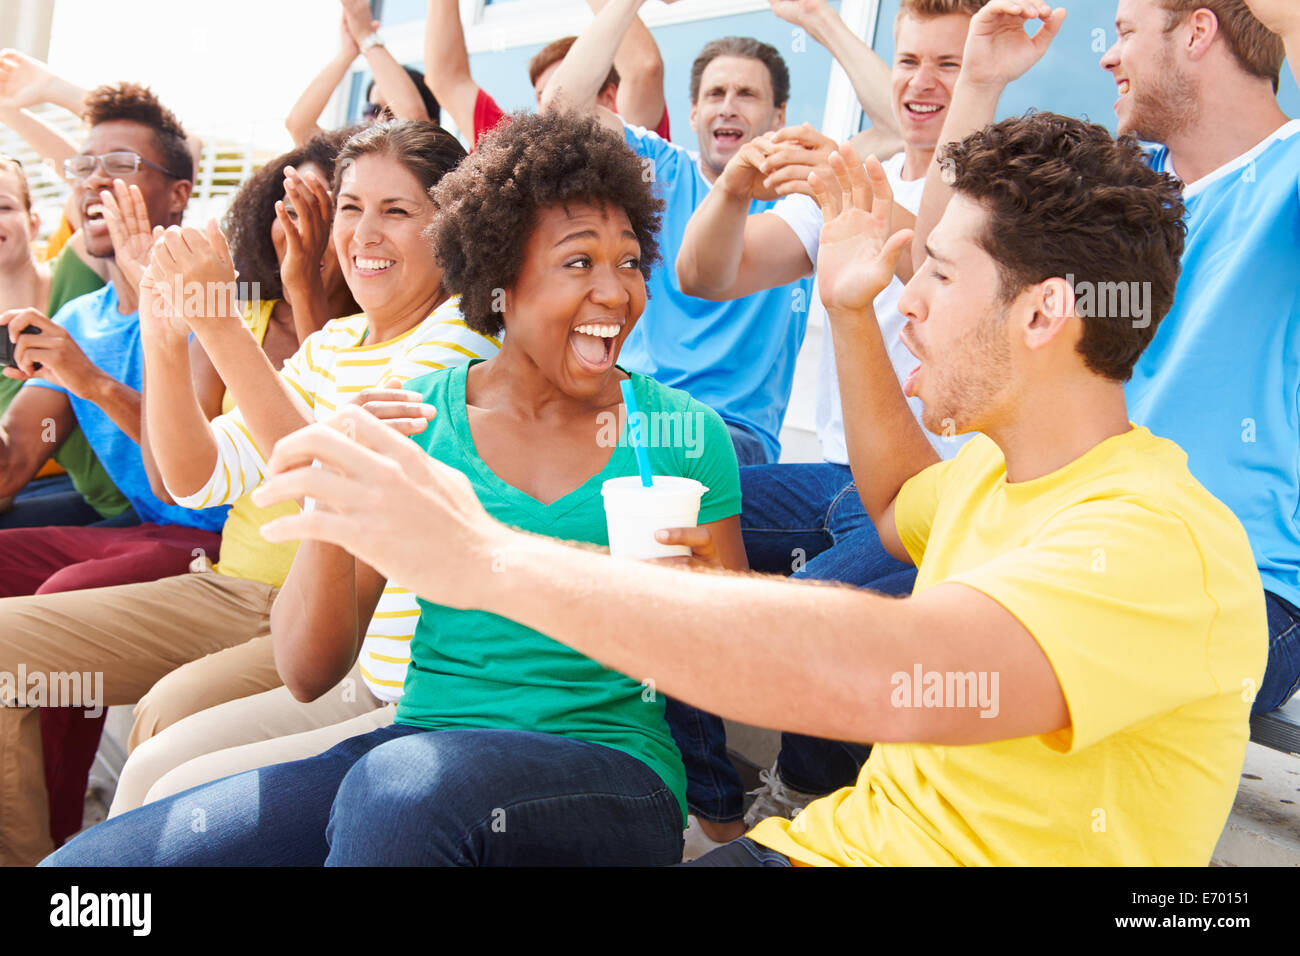 Los espectadores en los colores del equipo ver eventos deportivos Foto de stock